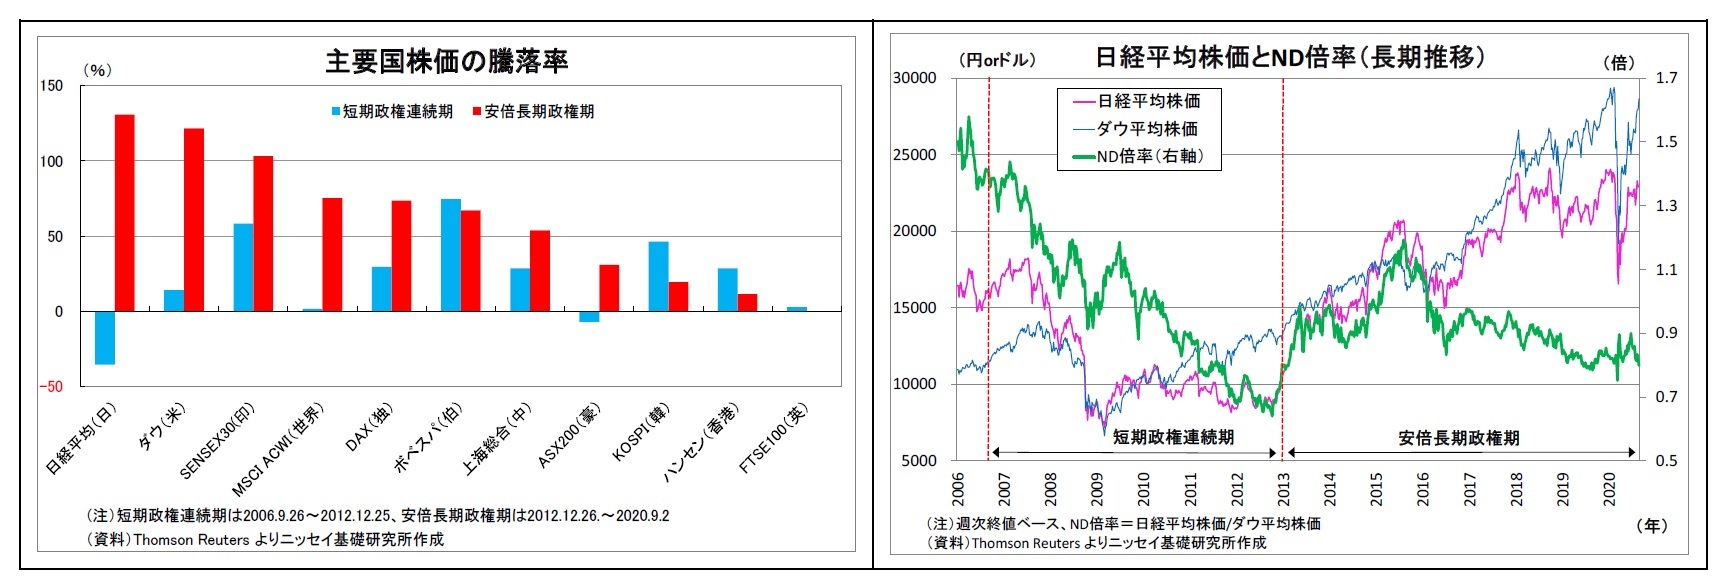 主要国株価の騰落率/日経平均株価とND倍率（長期推移）